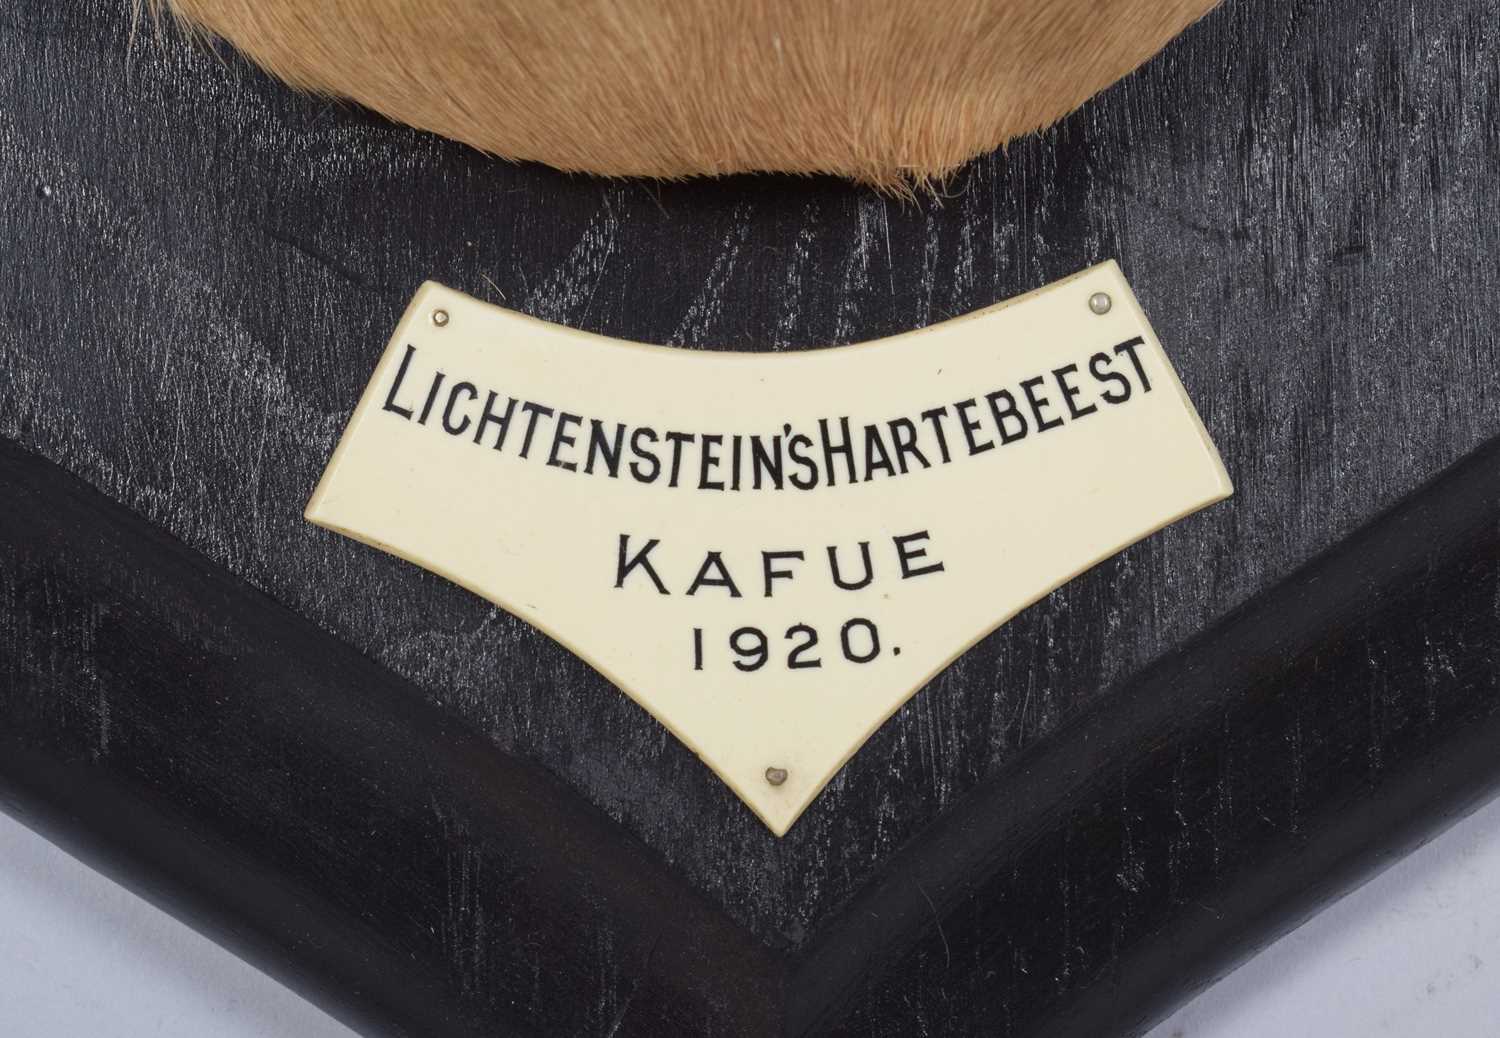 Taxidermy: Lichtenstein’s Hartebeest (Alcelaphus lichtensteinii), dated 1920, Kafue, Zambia, by - Image 4 of 8